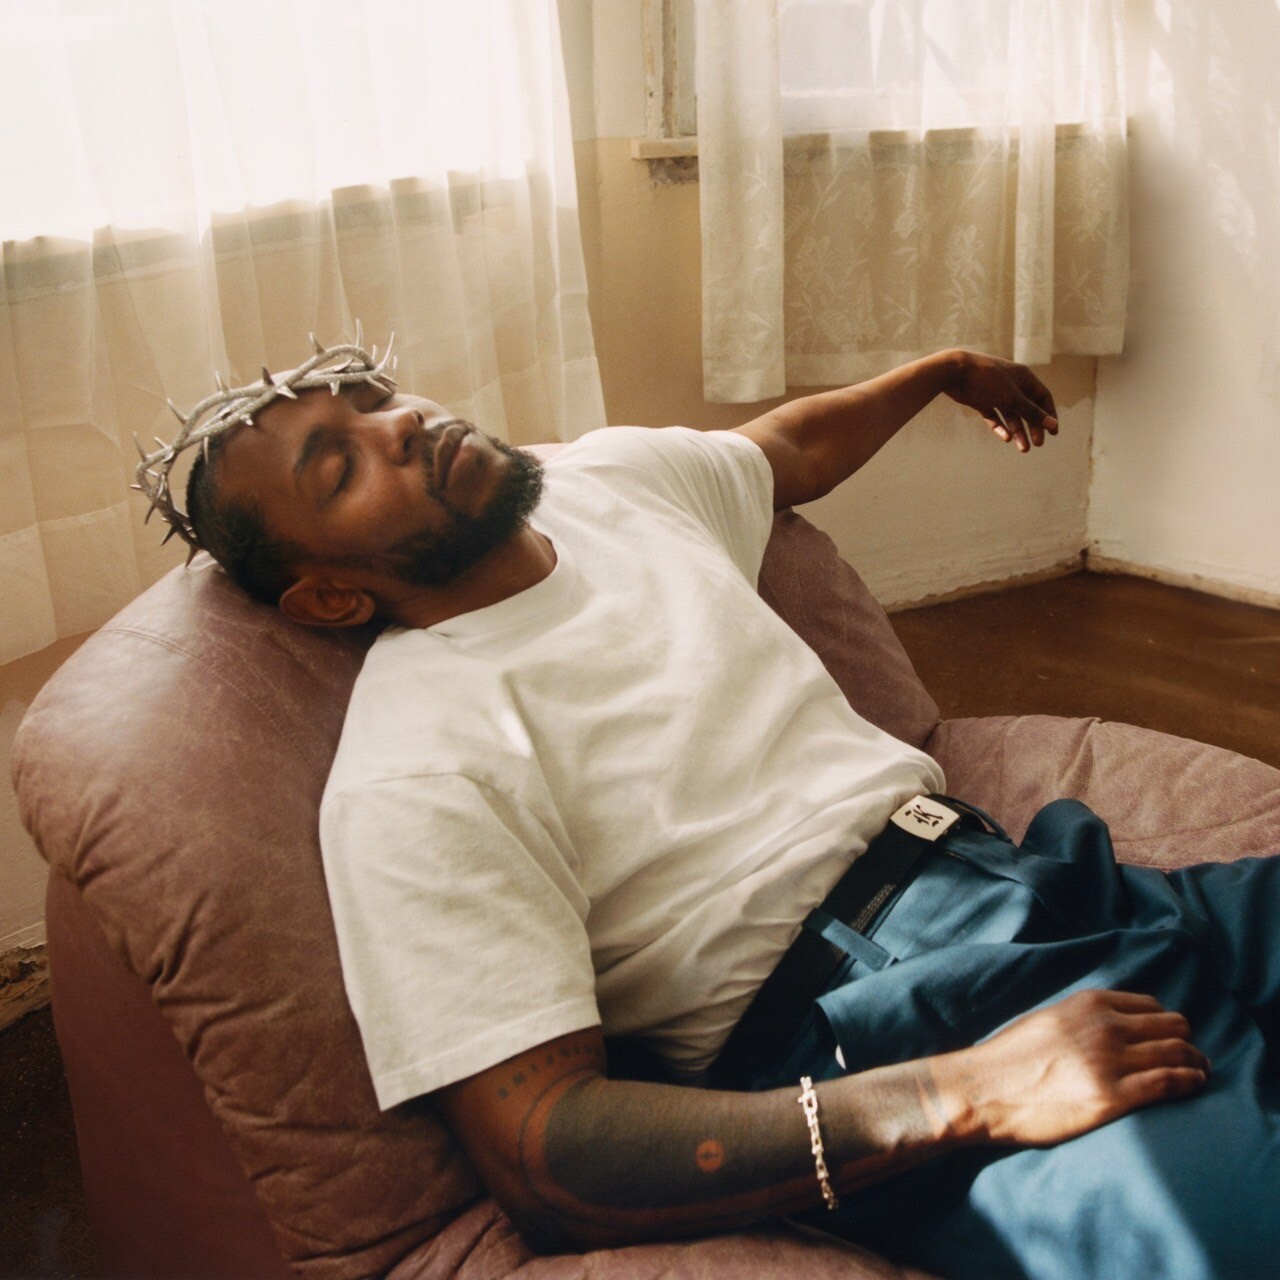 สุดยอดแรปเปอร์เจ้าของรางวัลแกรมมี่ "Kendrick Lamar" สร้างเสียงฮือฮาไปทั่วโลก คัมแบ็คในรอบ 5 ปี พร้อมปล่อยอัลบั้มใหม่ชุดที่ 5 "Mr. Morale & The Big Steppers"